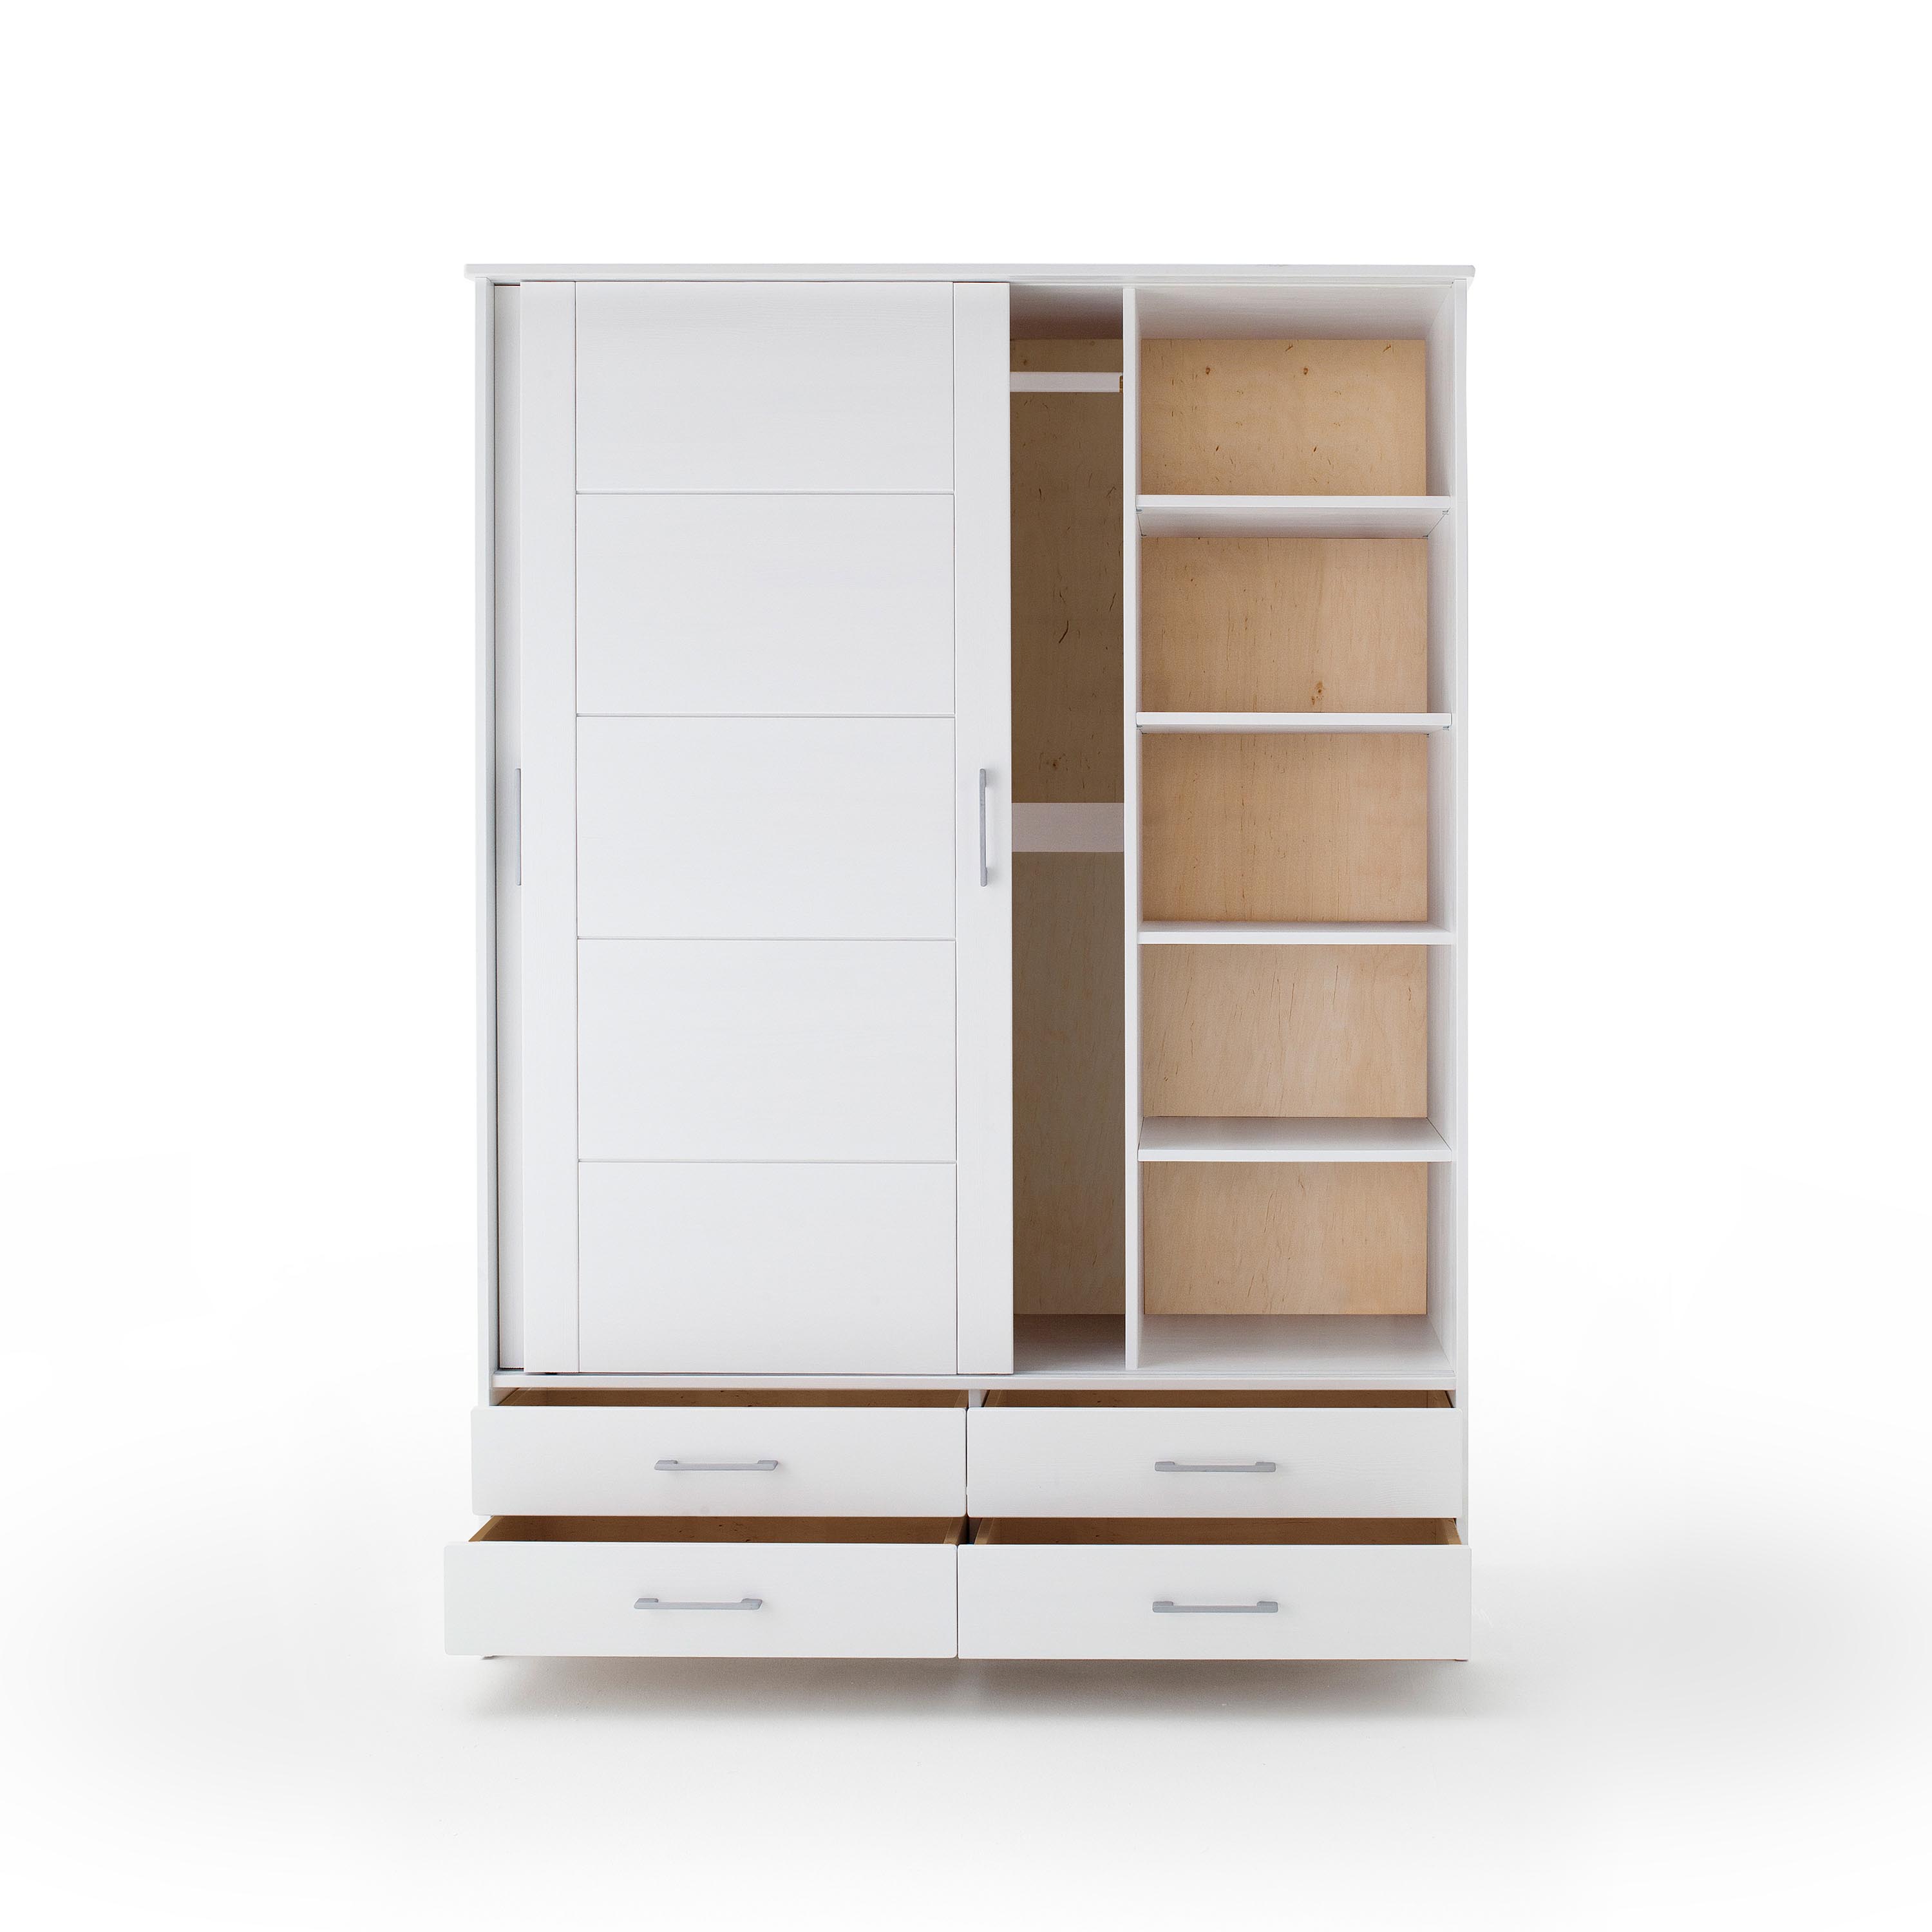 Schiebetürenschrank Skadi – aus massivem Fichtenholz, mit zwei Türen und vier Schubladen, weiß lackiert